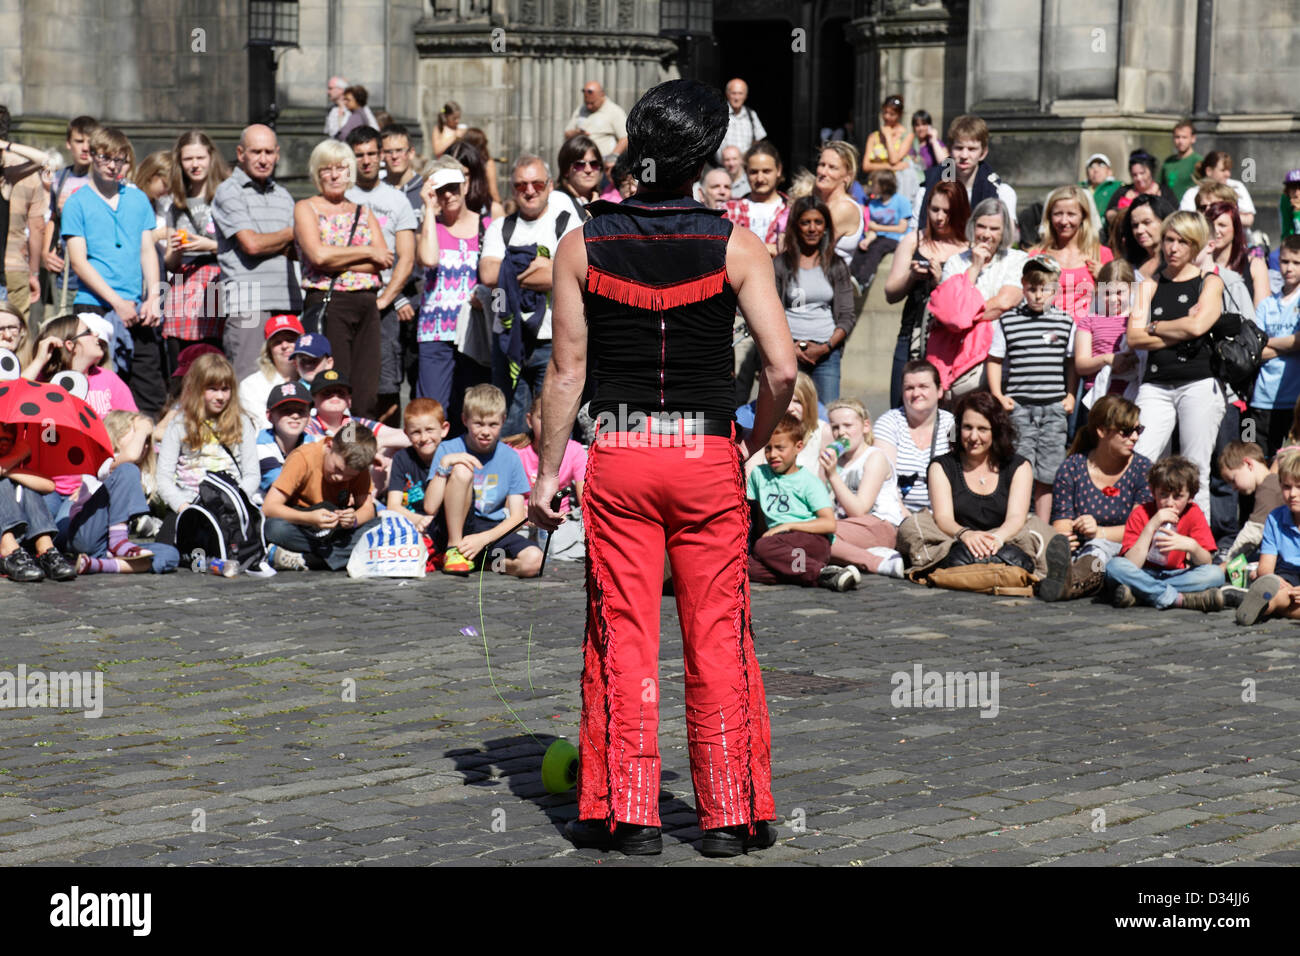 Une foule regardant un interprète de rue au Edinburgh Festival Fringe, en Écosse, au Royaume-Uni Banque D'Images